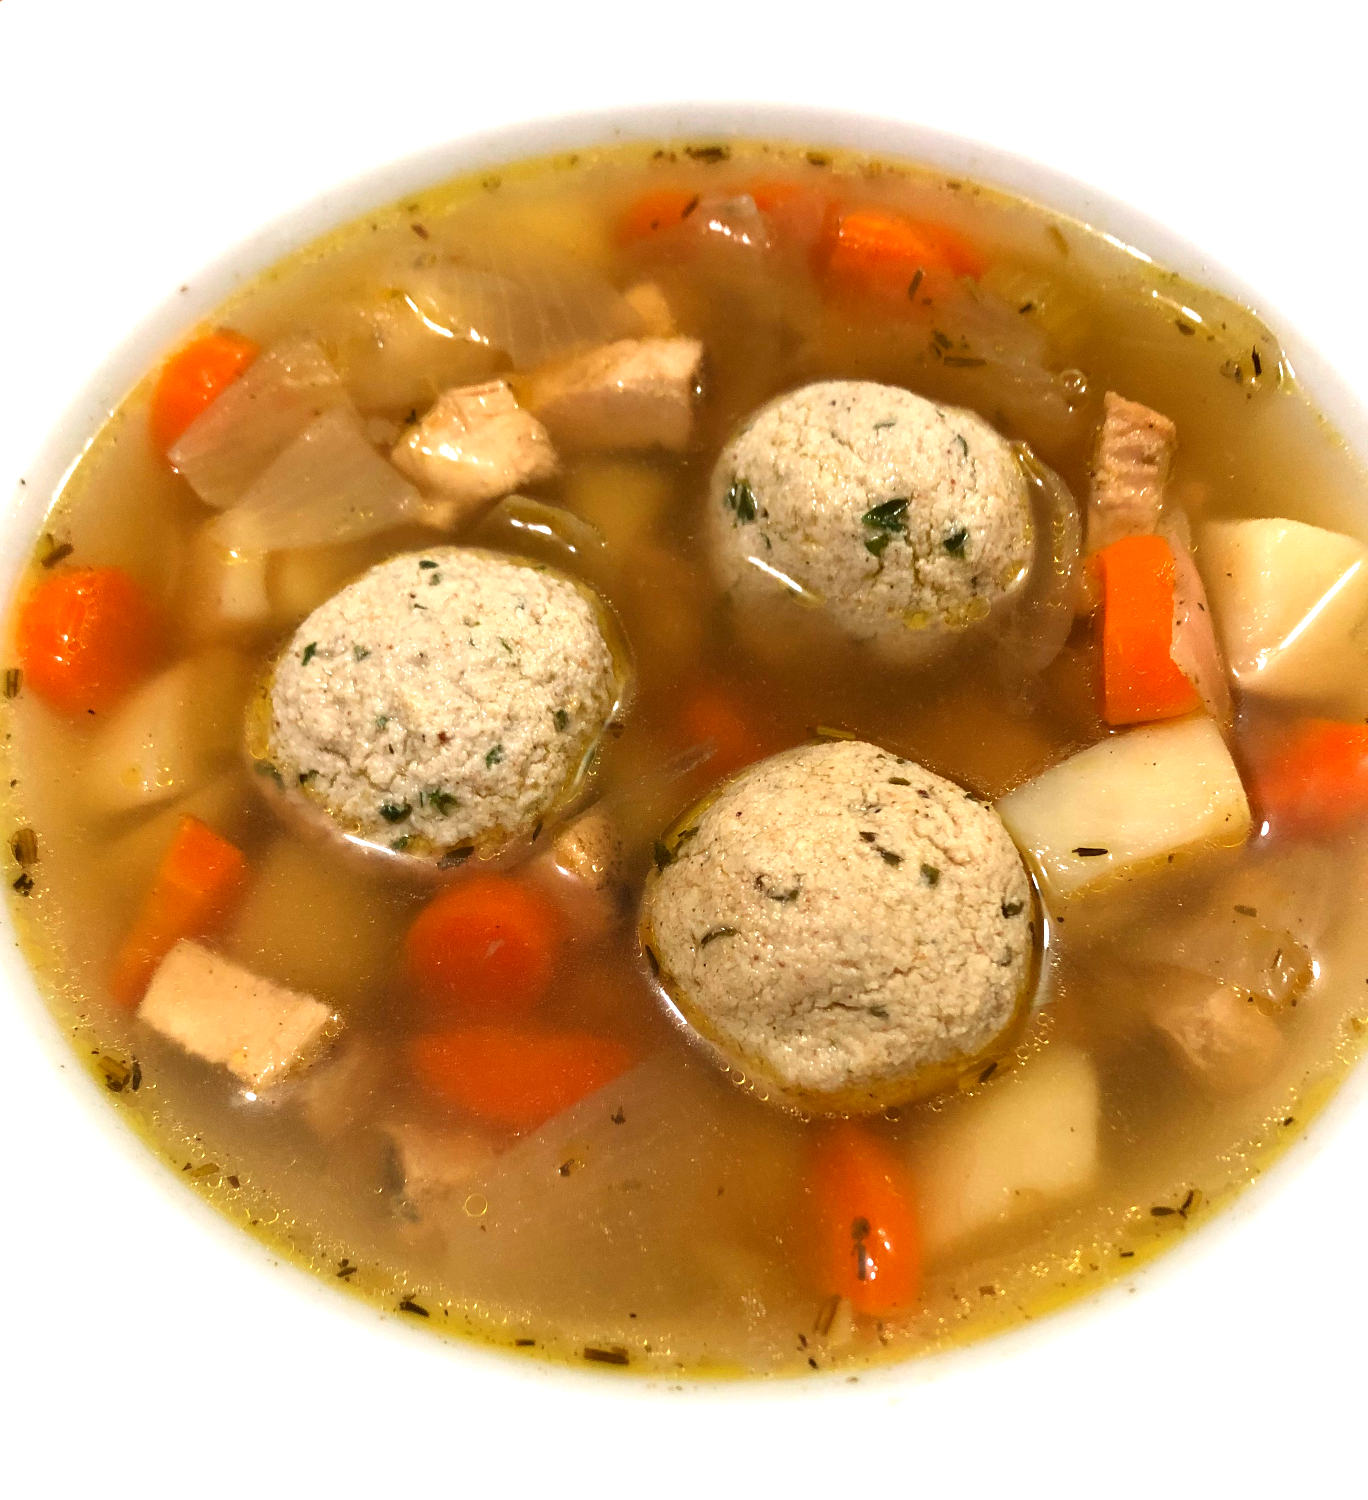 Chicken matzo ball soup recipe | Michele Bogle